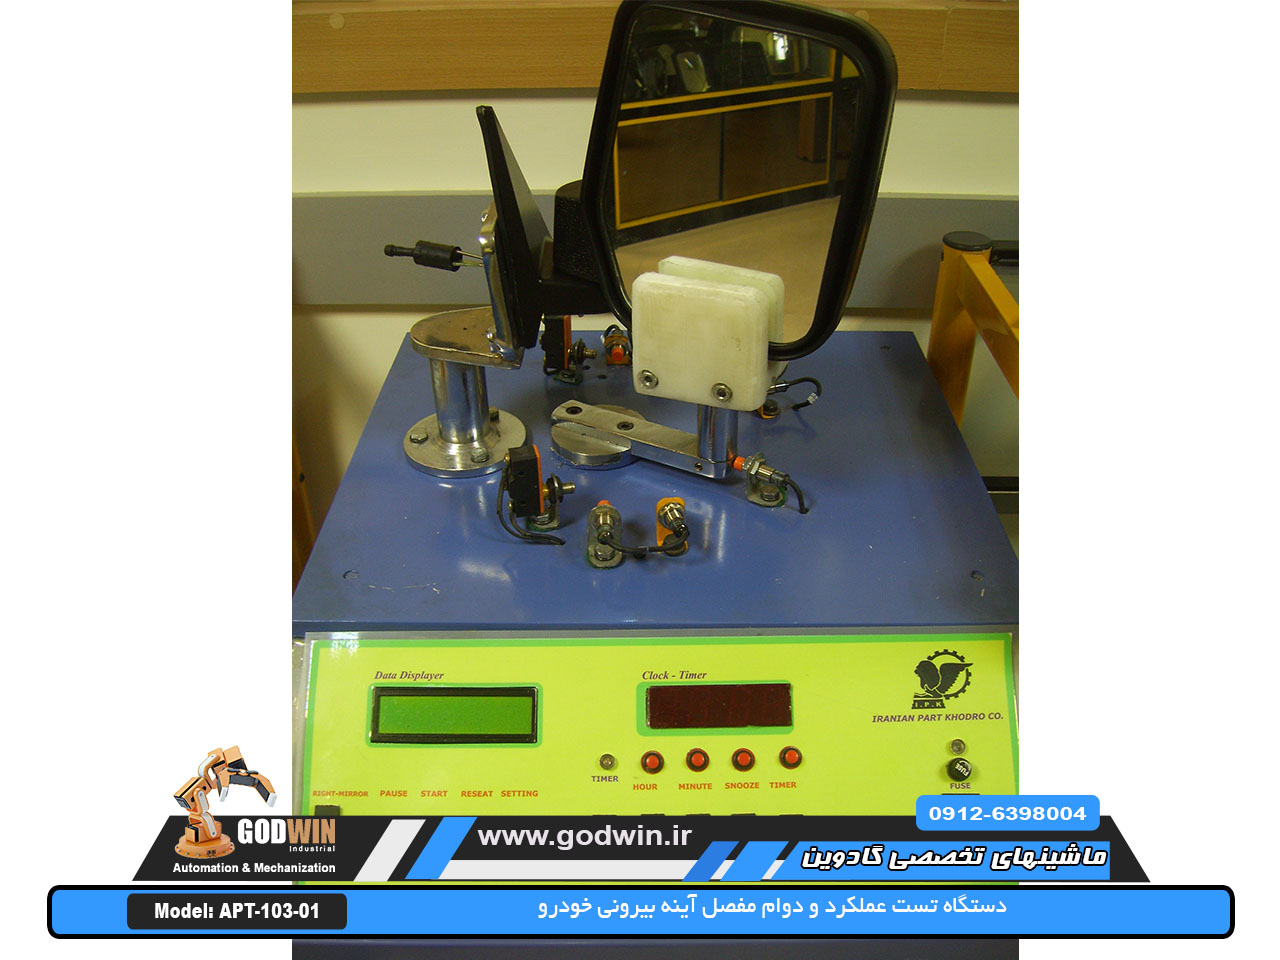 مدل APT-103-01 : دستگاه و یونیت تست و ارزیابی عملکرد مفصل آینه بیرونی خودرو